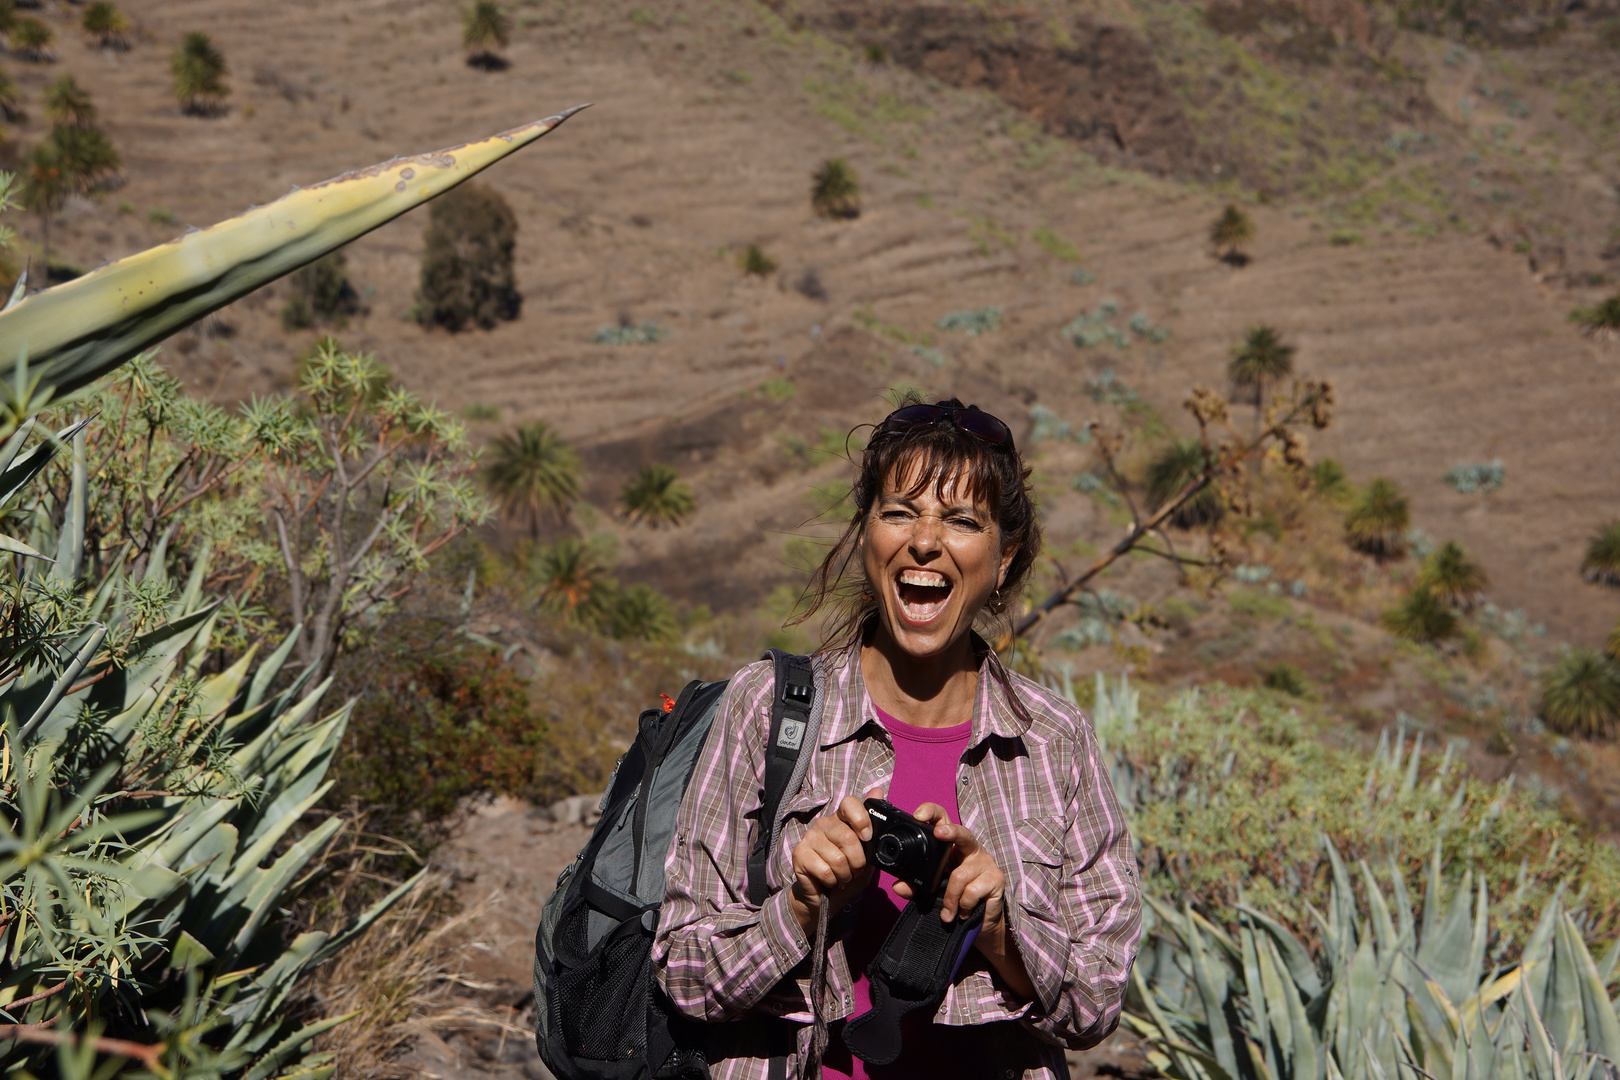 Monika - unsere Wanderführerin - kurz vor dem Gruppenfoto machen selber fotografiert